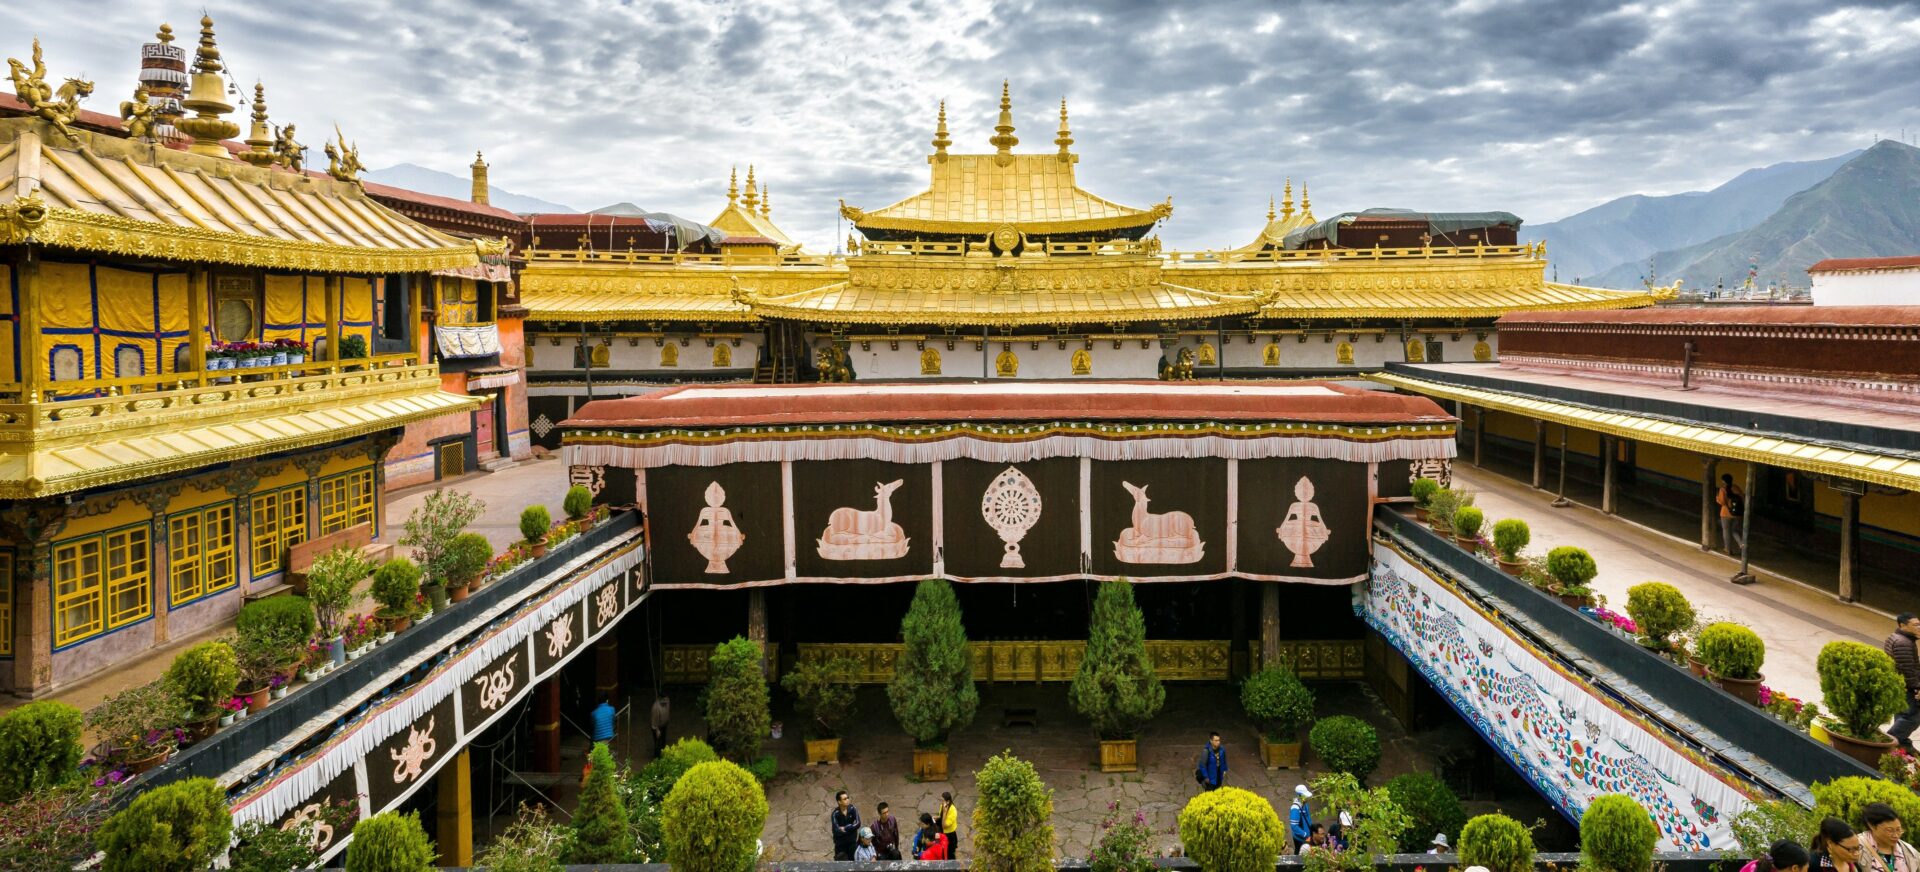 Du lịch hành hương Tây Tạng về chùa Jokhang